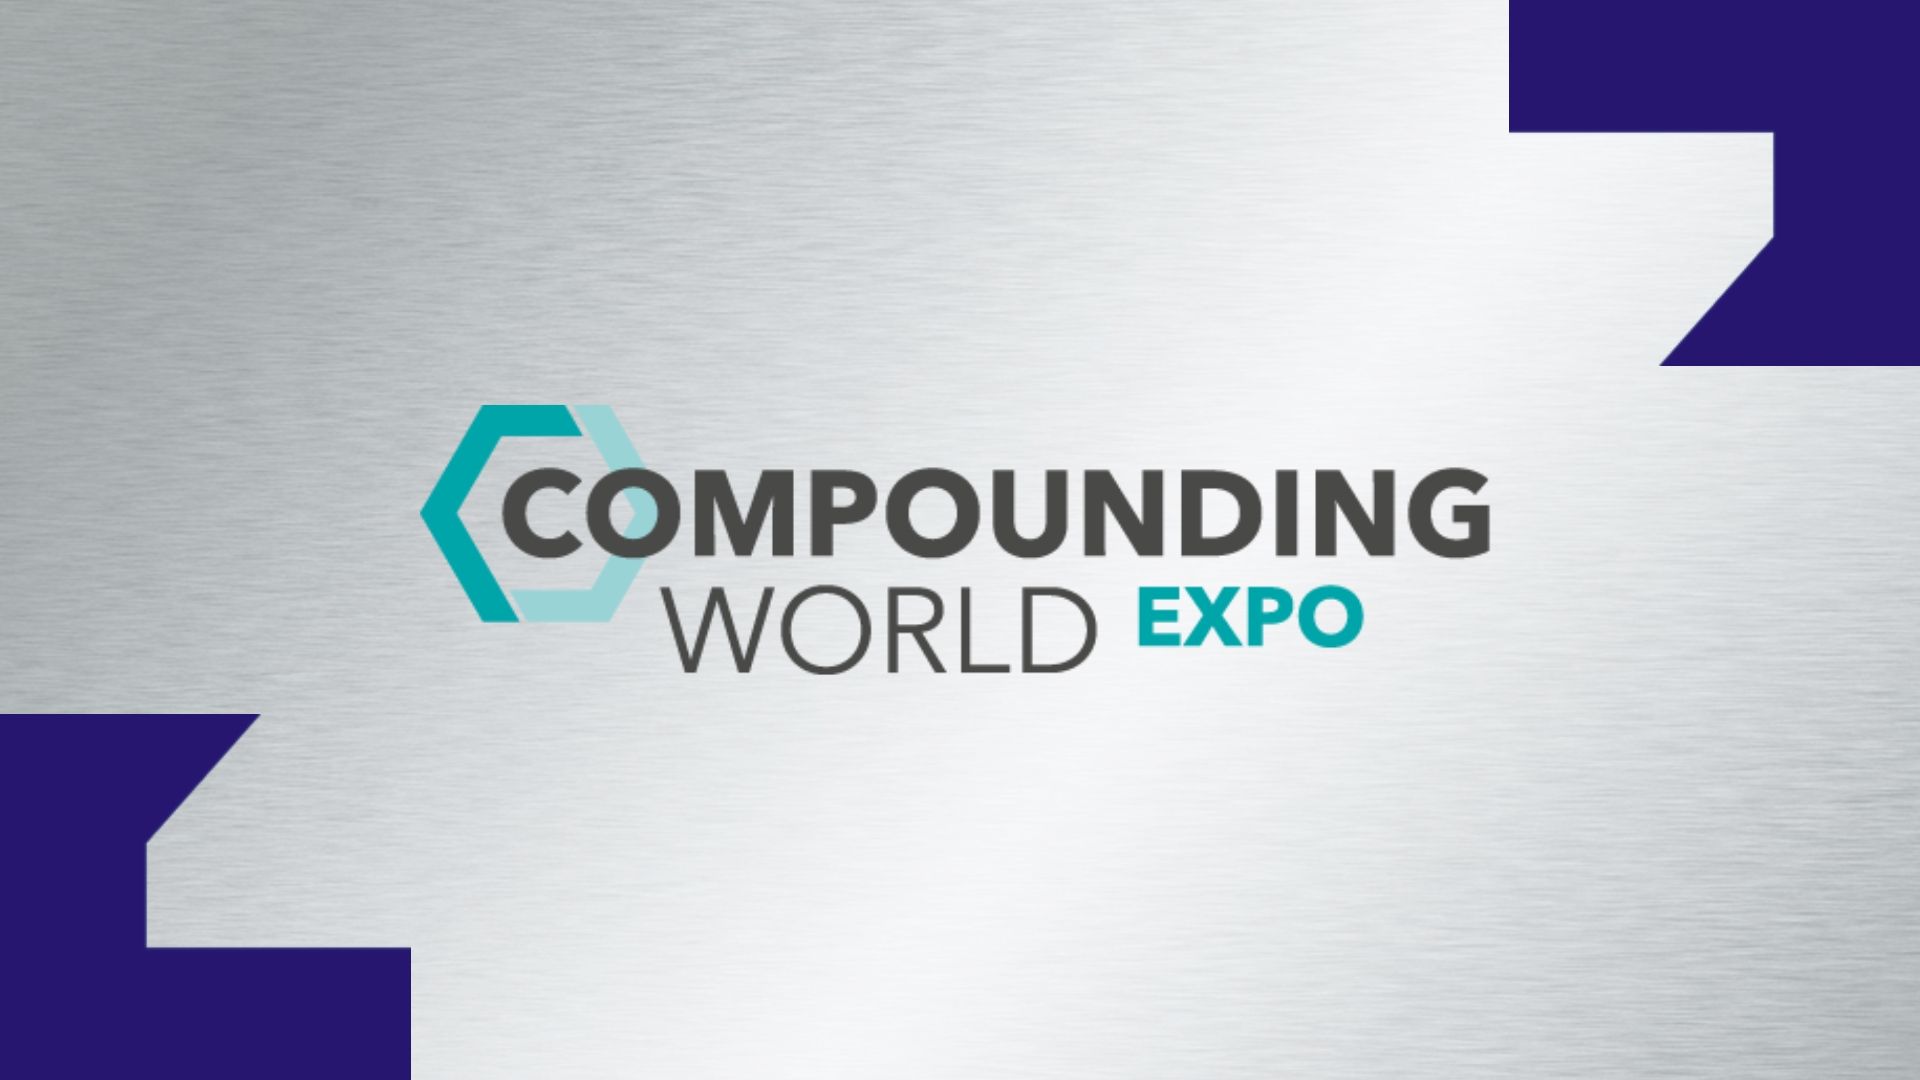 Compounding World Expo Website.jpg